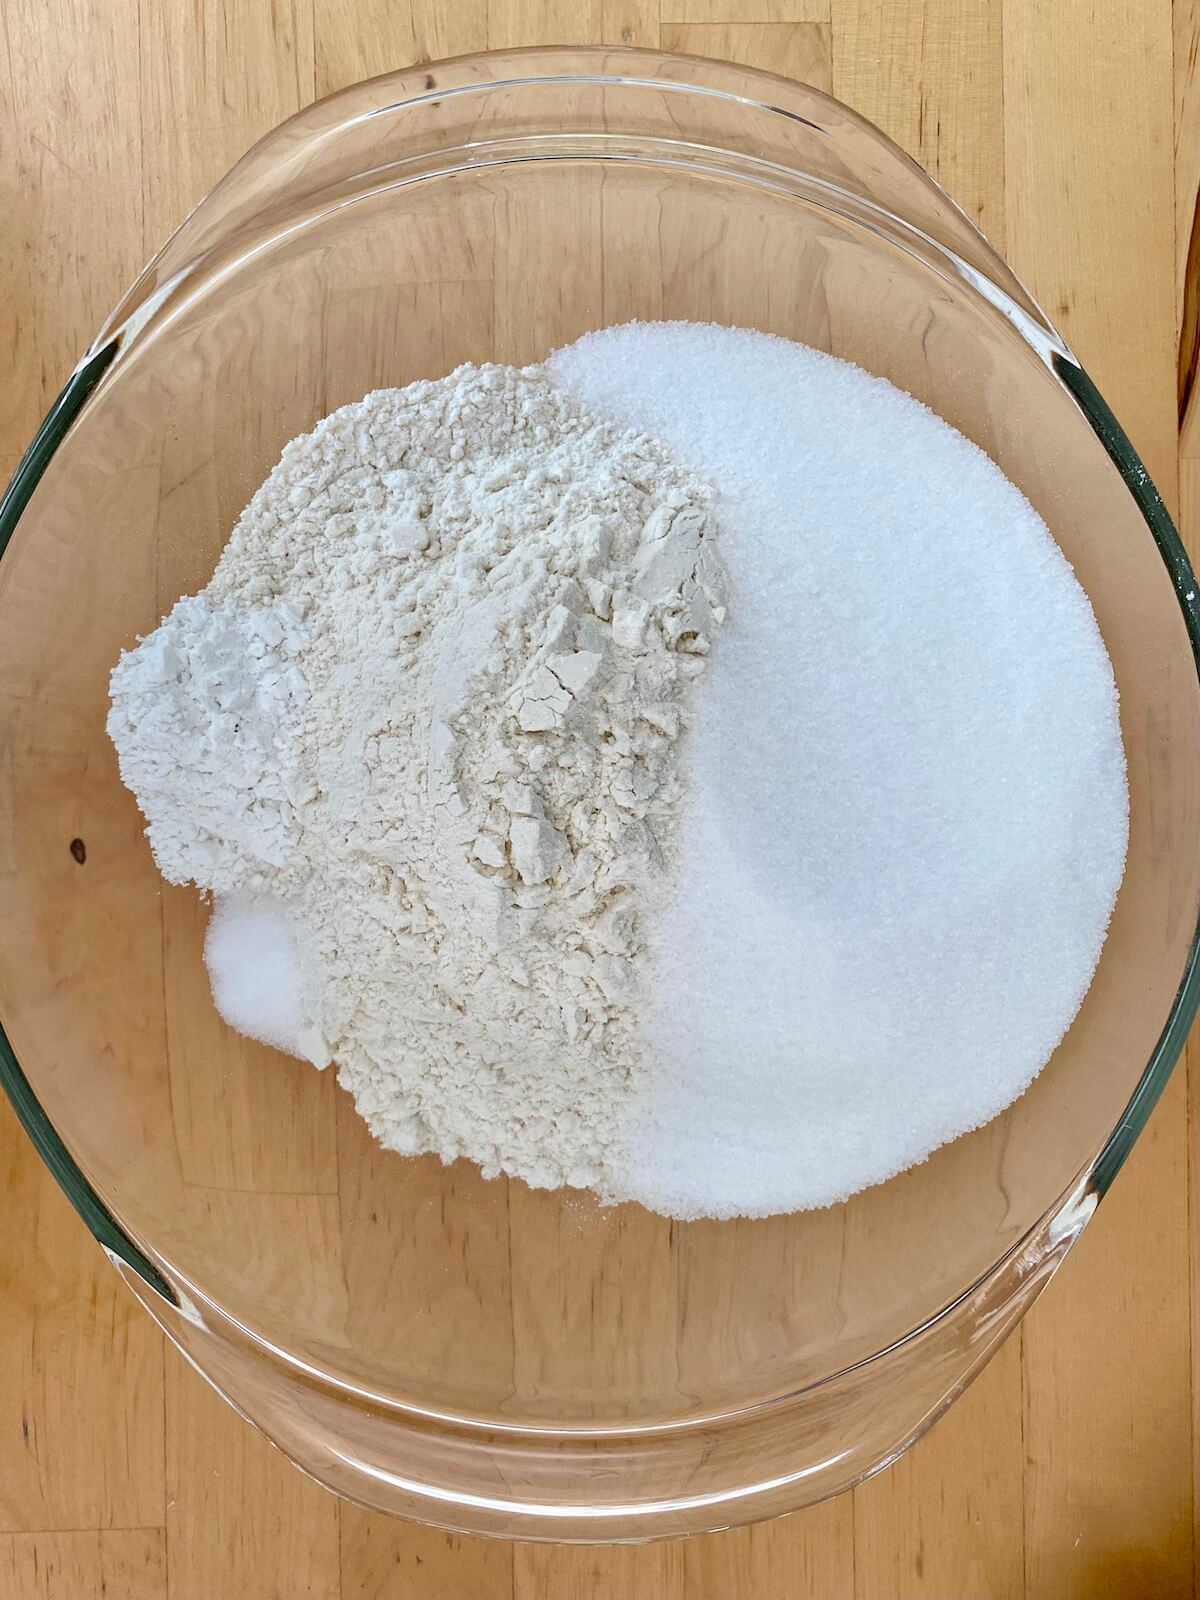 Flour, sugar, baking powder, and salt in a clear glass bowl.